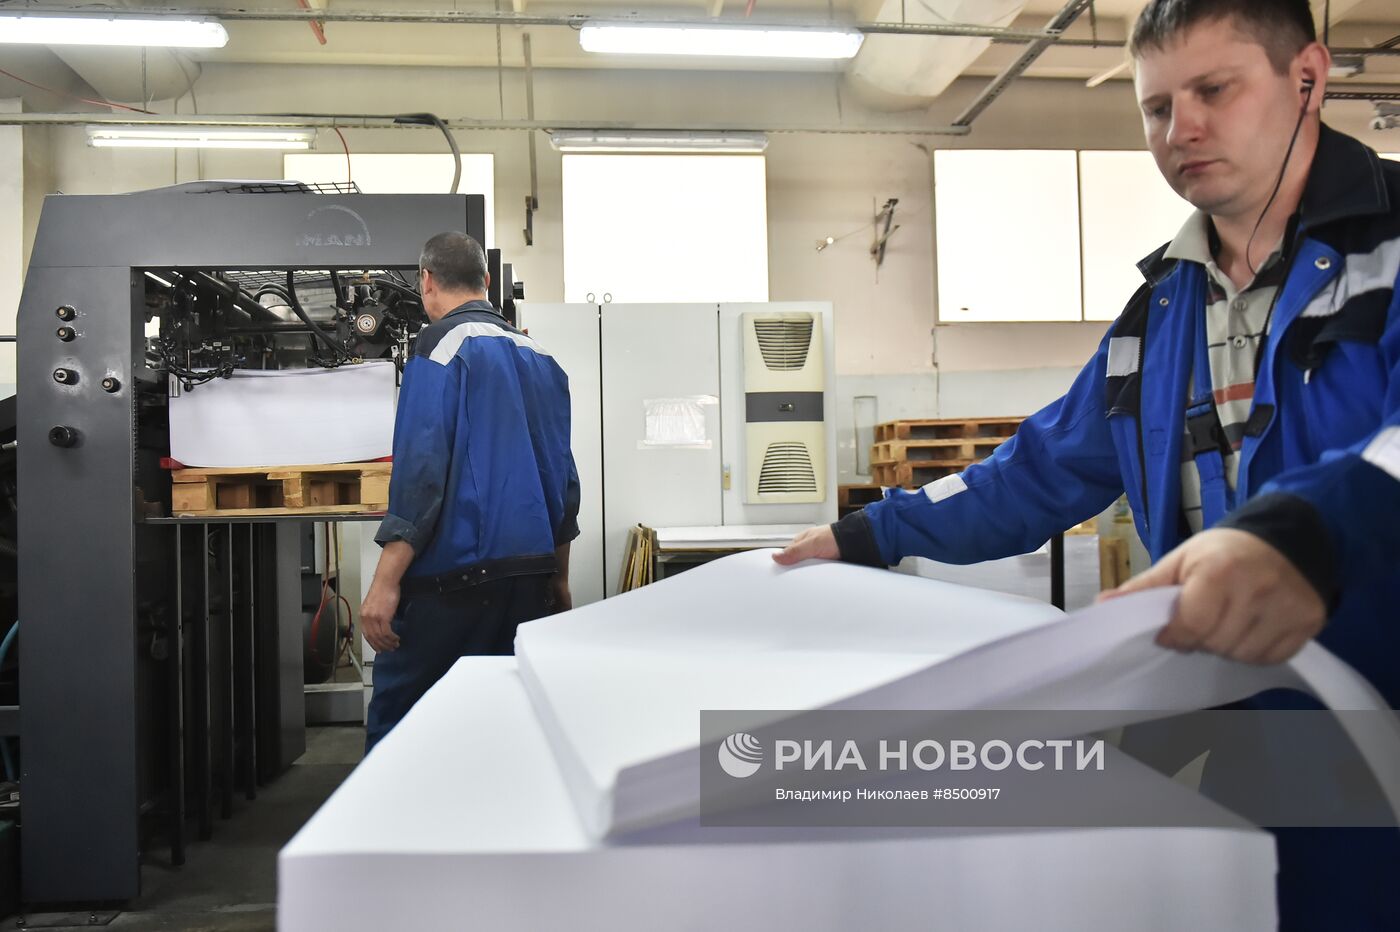 Печать бюллетеней для голосования на выборах в Новосибирске